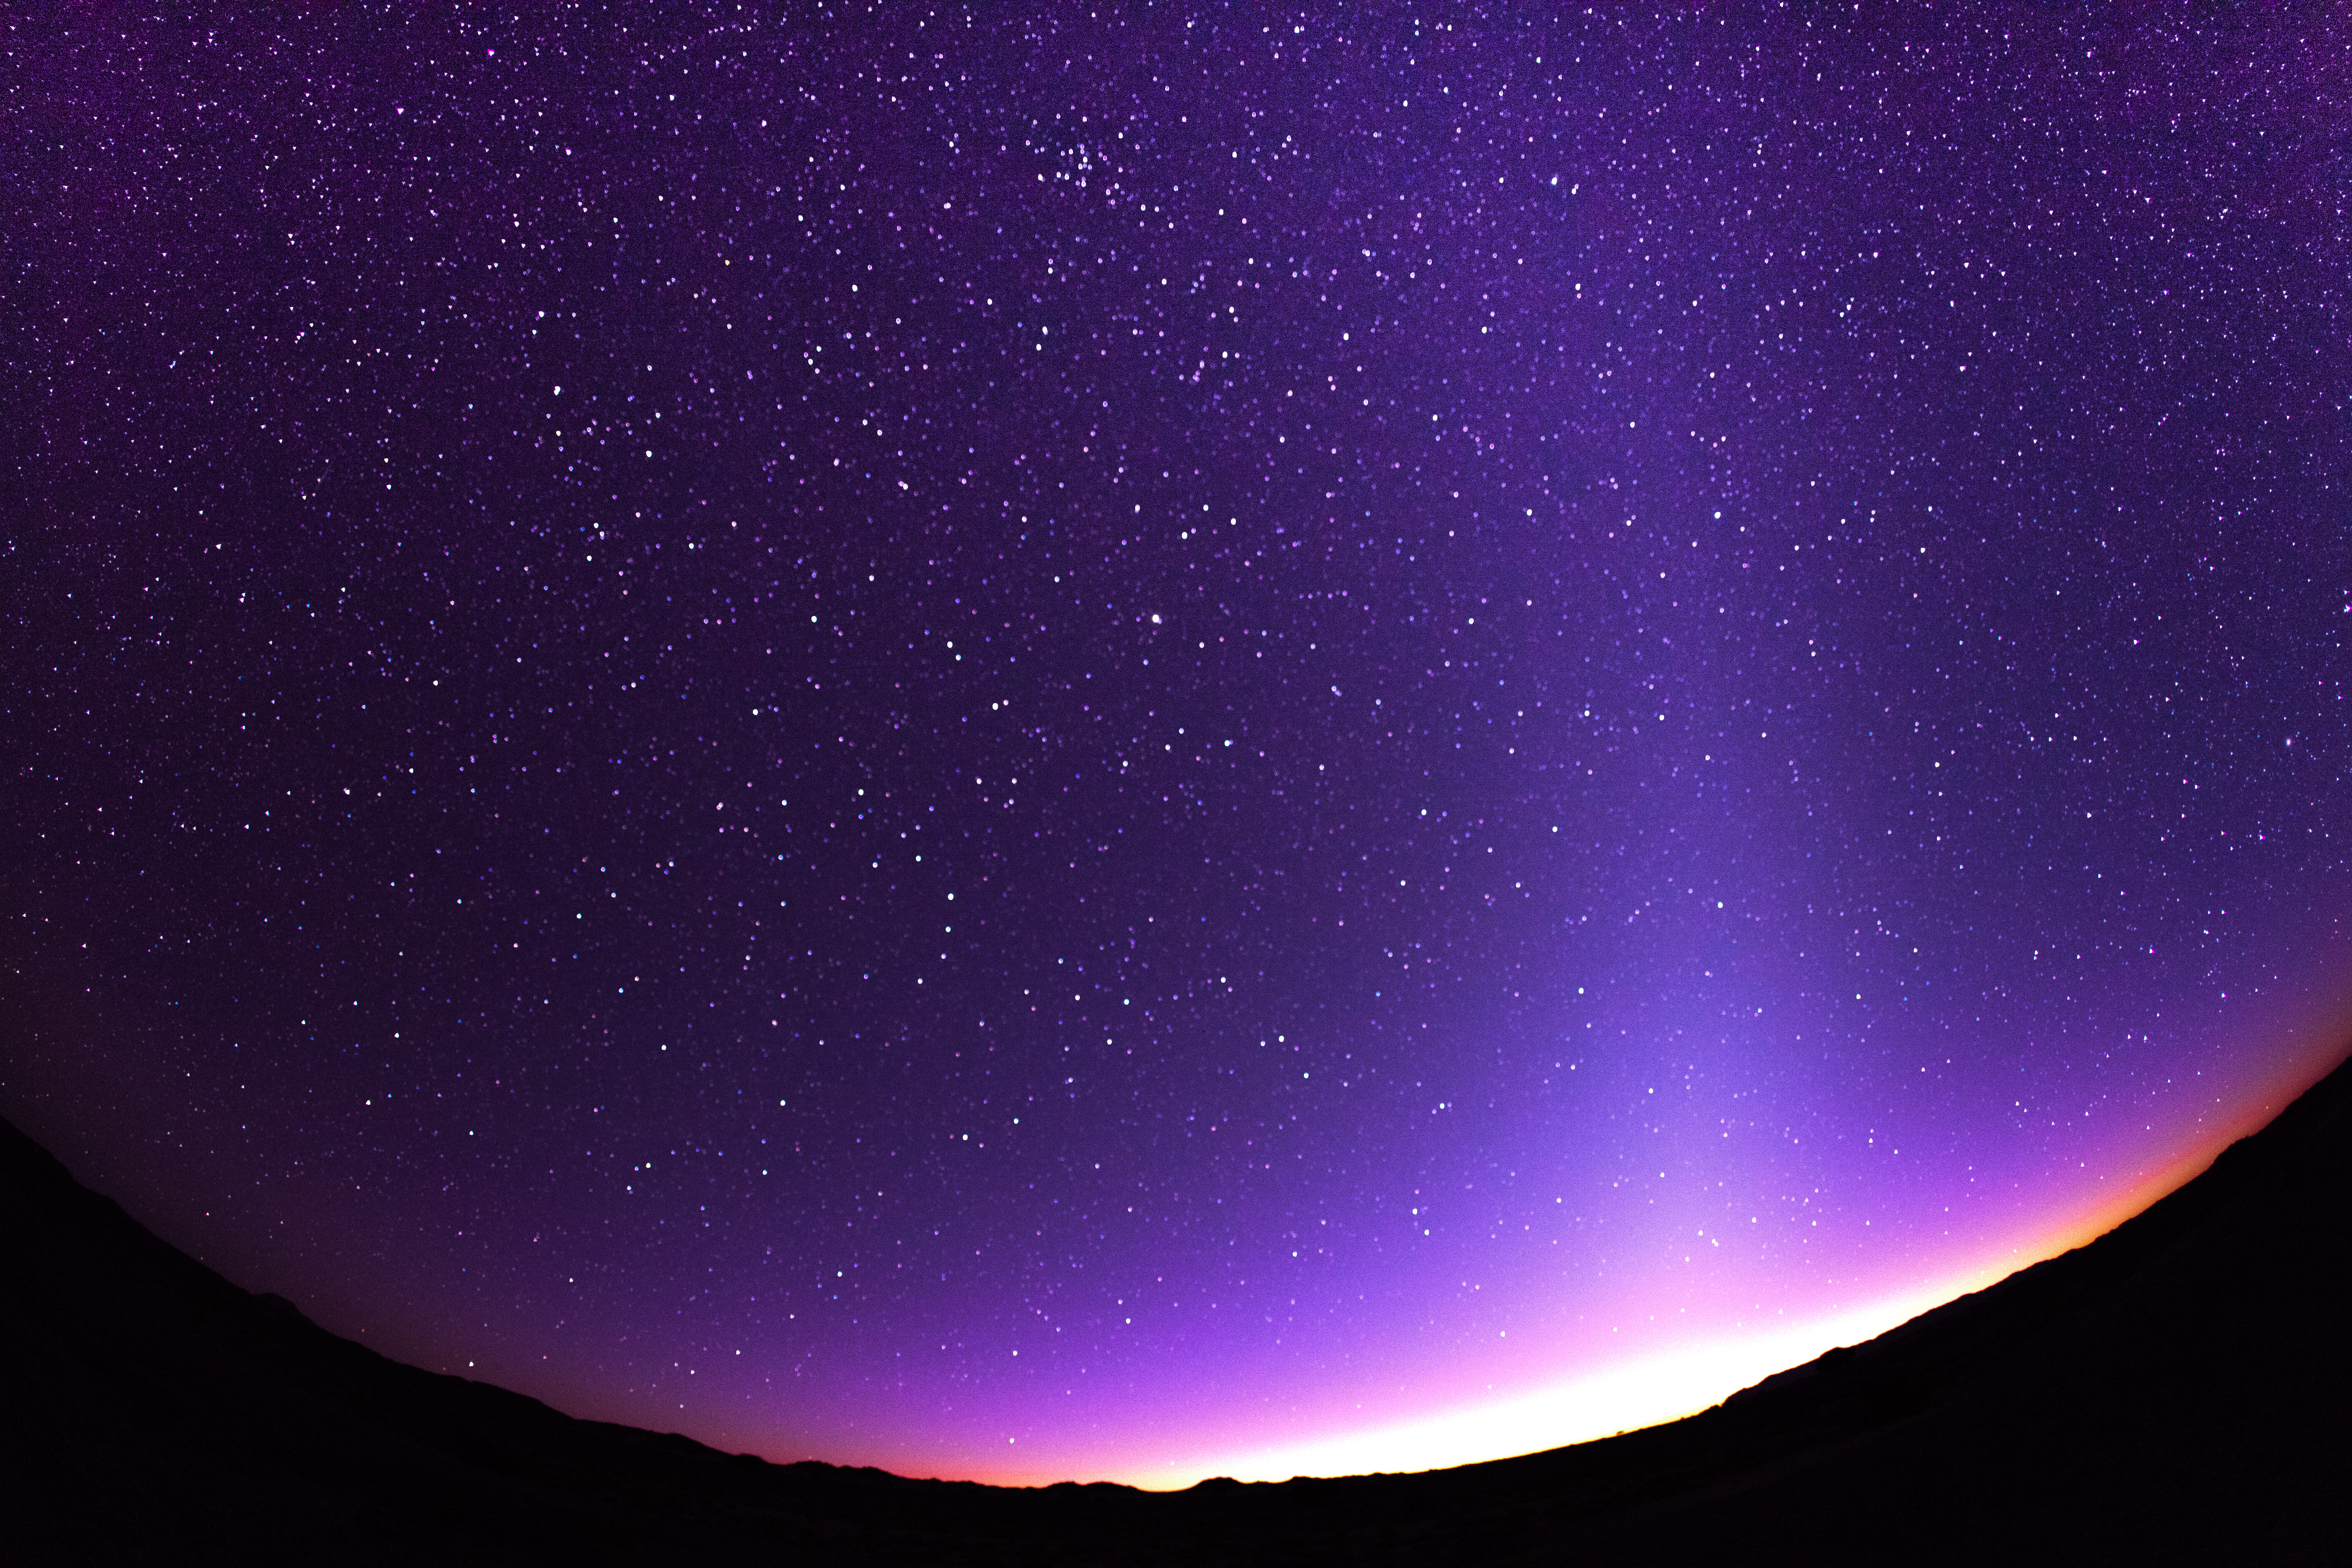 フリー写真素材 自然 風景 空 夜空 星 スター パープル 画像素材なら 無料 フリー写真素材のフリーフォト